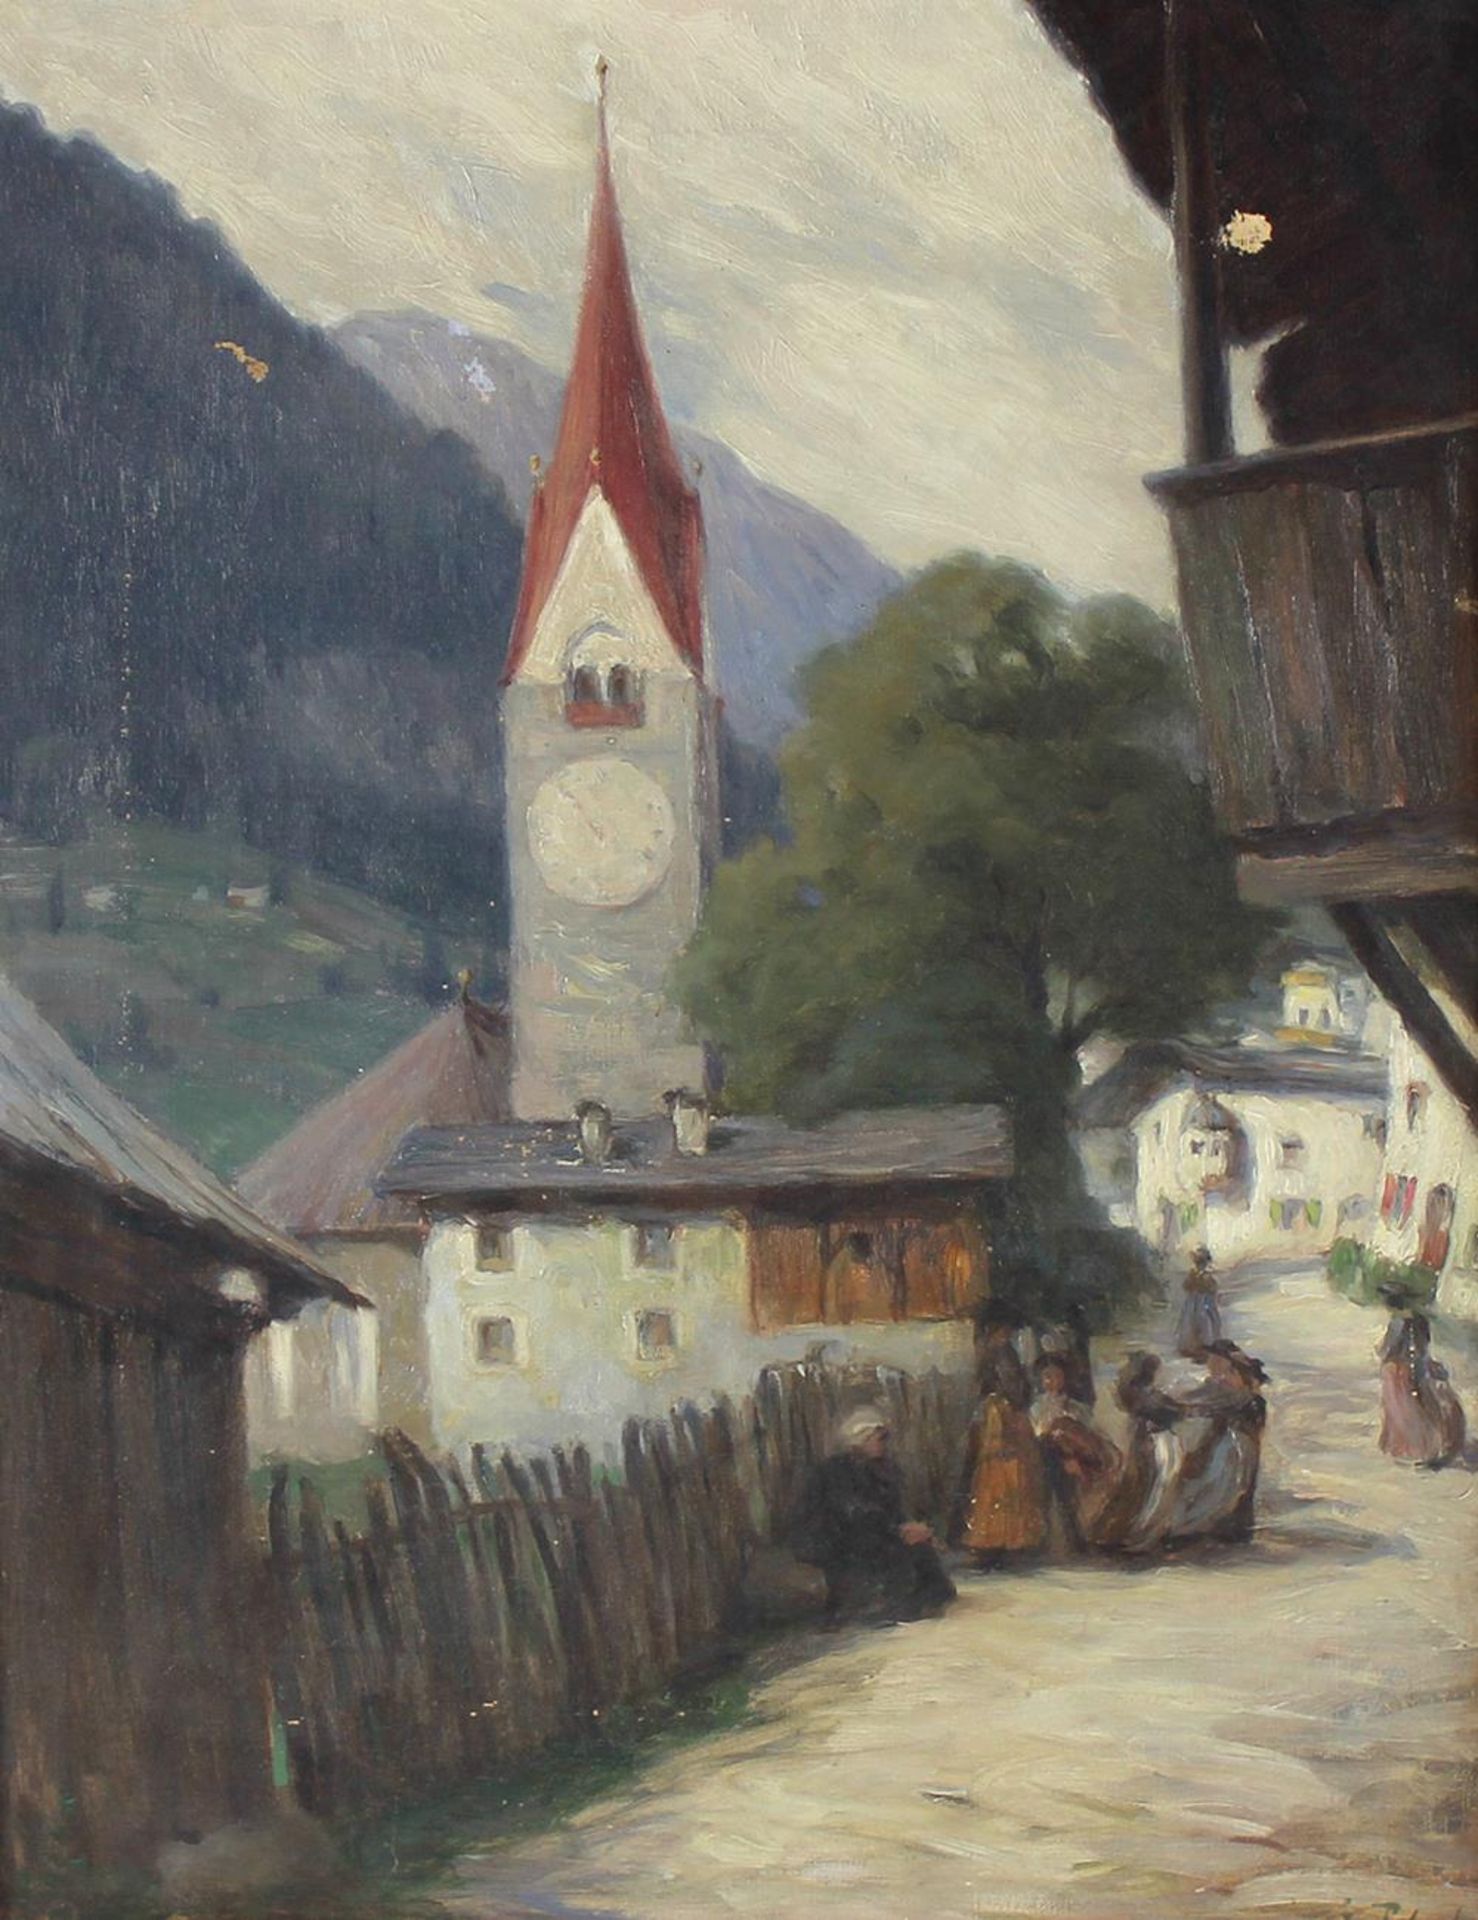 Tirol.Tirol. Dorfstrasse in den Alpen von Tirol. Öl auf Lwd. Um 1910. 58 x 45 cm. Unt.Tiro